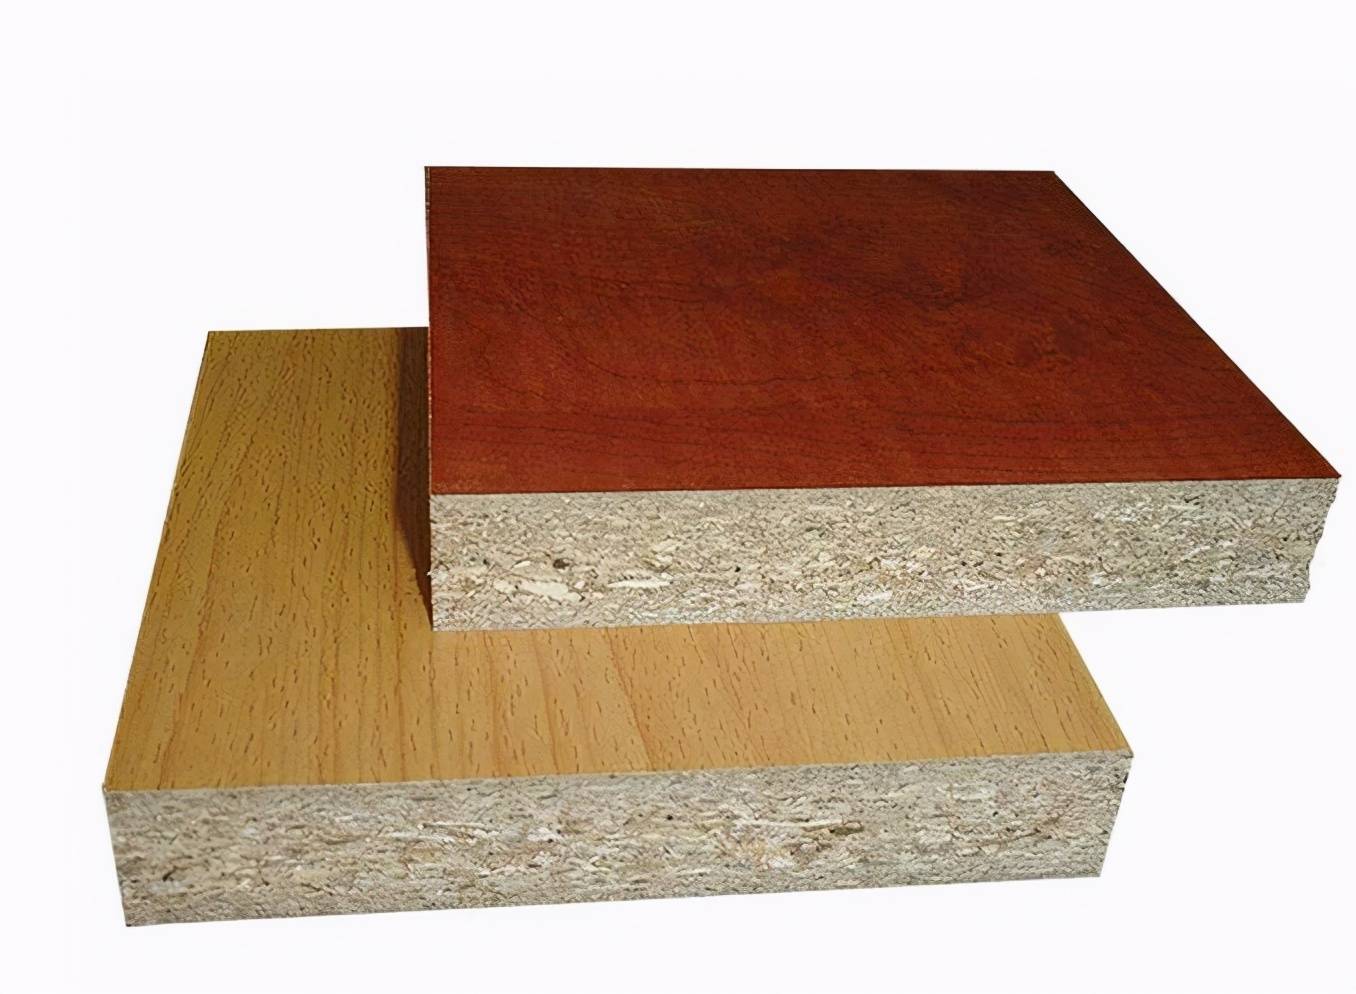 卧室做衣柜,实木颗粒板和密度板选哪个好?